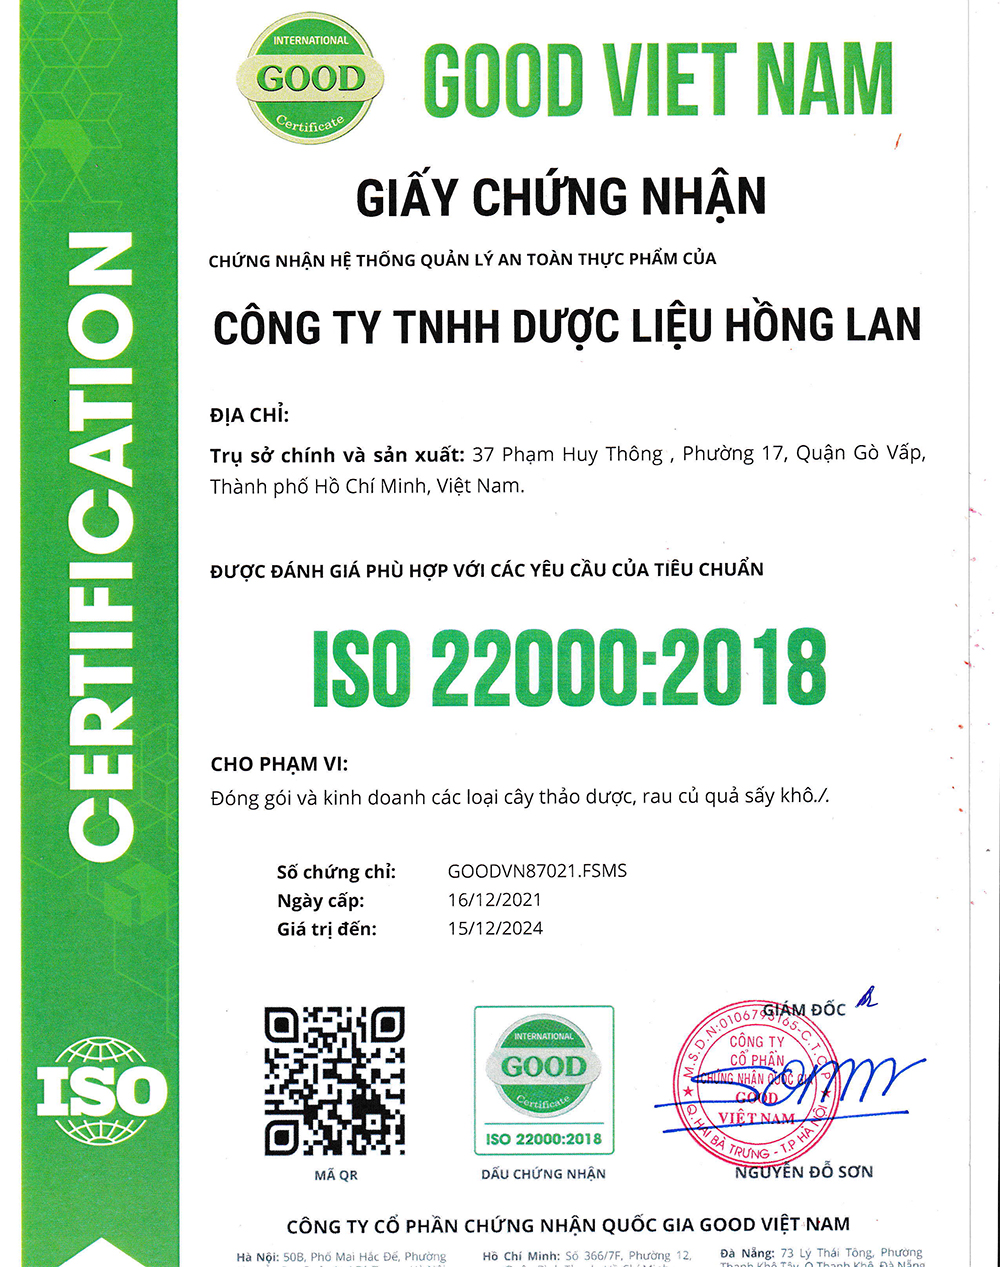 Trà túi lọc Cây Trinh Nữ Hoàng Cung & Nụ Tam Thất được sản xuất bởi Công ty TNHH Dược Liệu Hồng Lan theo hệ thống quản lý an toàn thực phẩm ISO 22000:2018 được cấp bởi công ty cổ phần chứng nhận Quốc Gia Good Việt Nam (Good Viet Nam Certification Joint Stock Company)